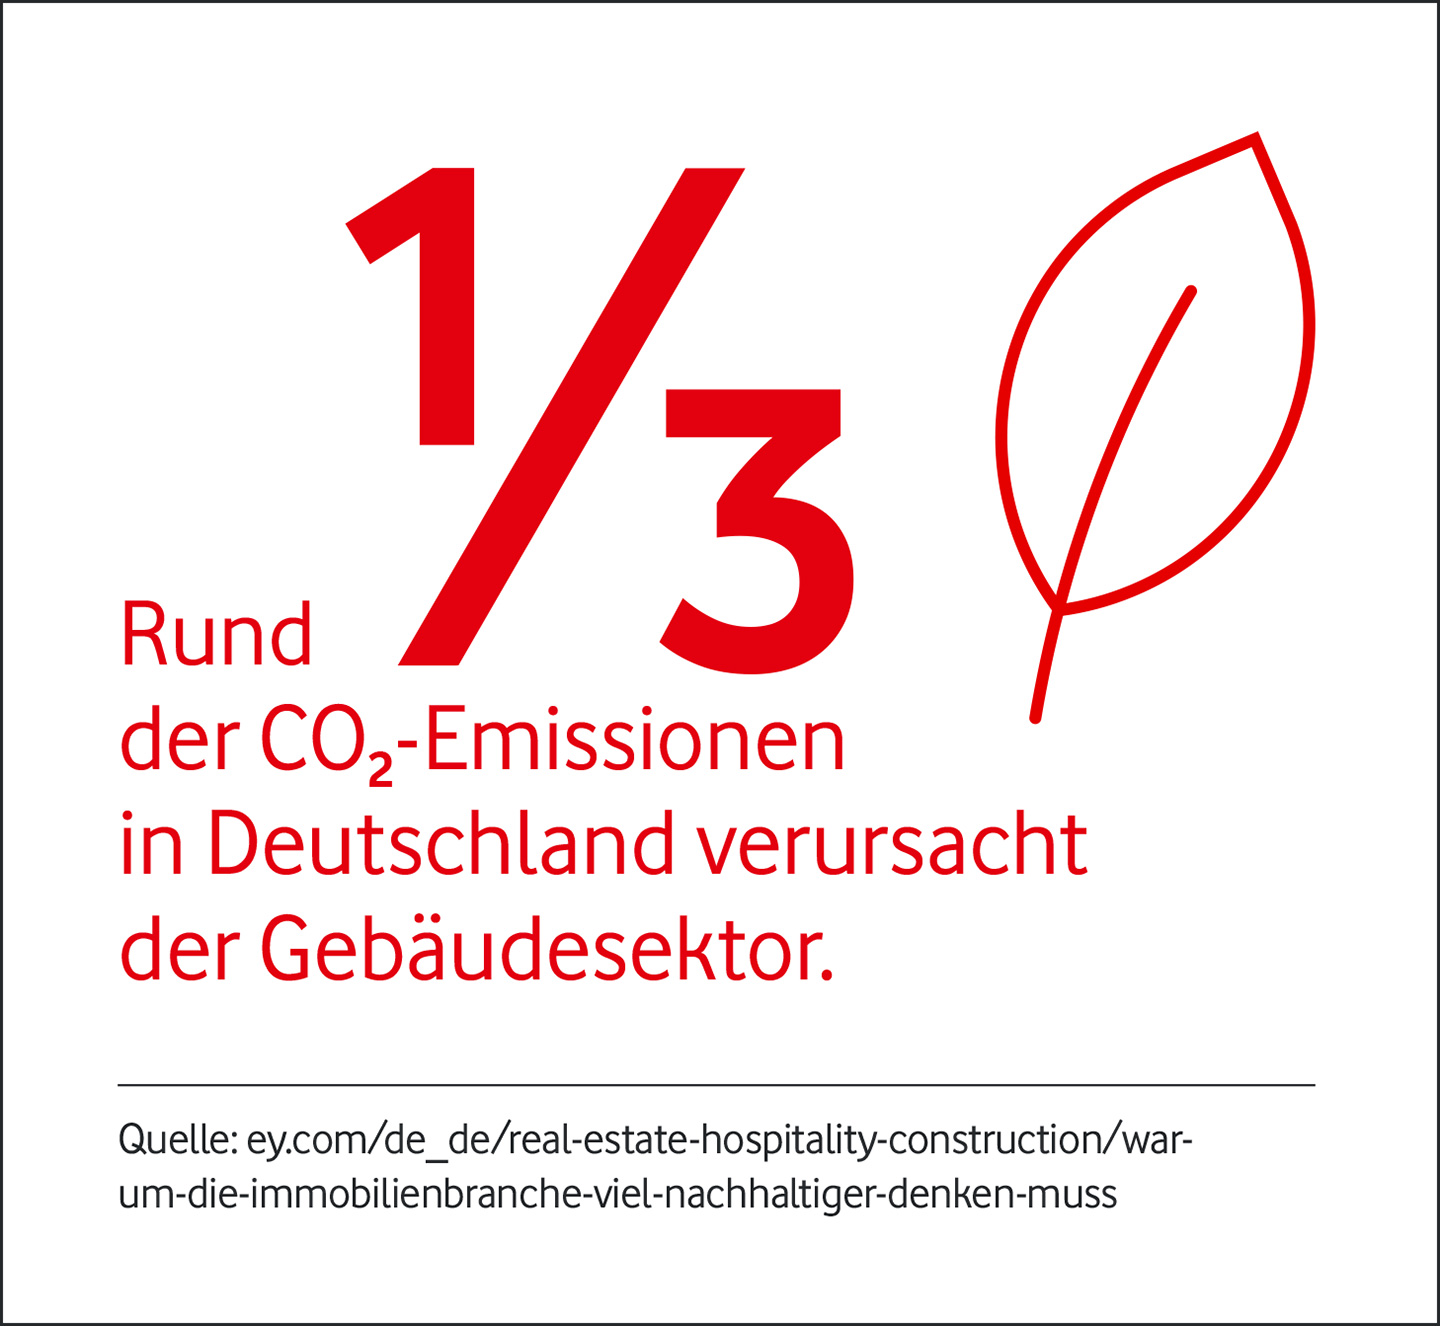 Rund 1/3 der CO2-Emissionen in Deutschland verursacht der Gebäudesektor.